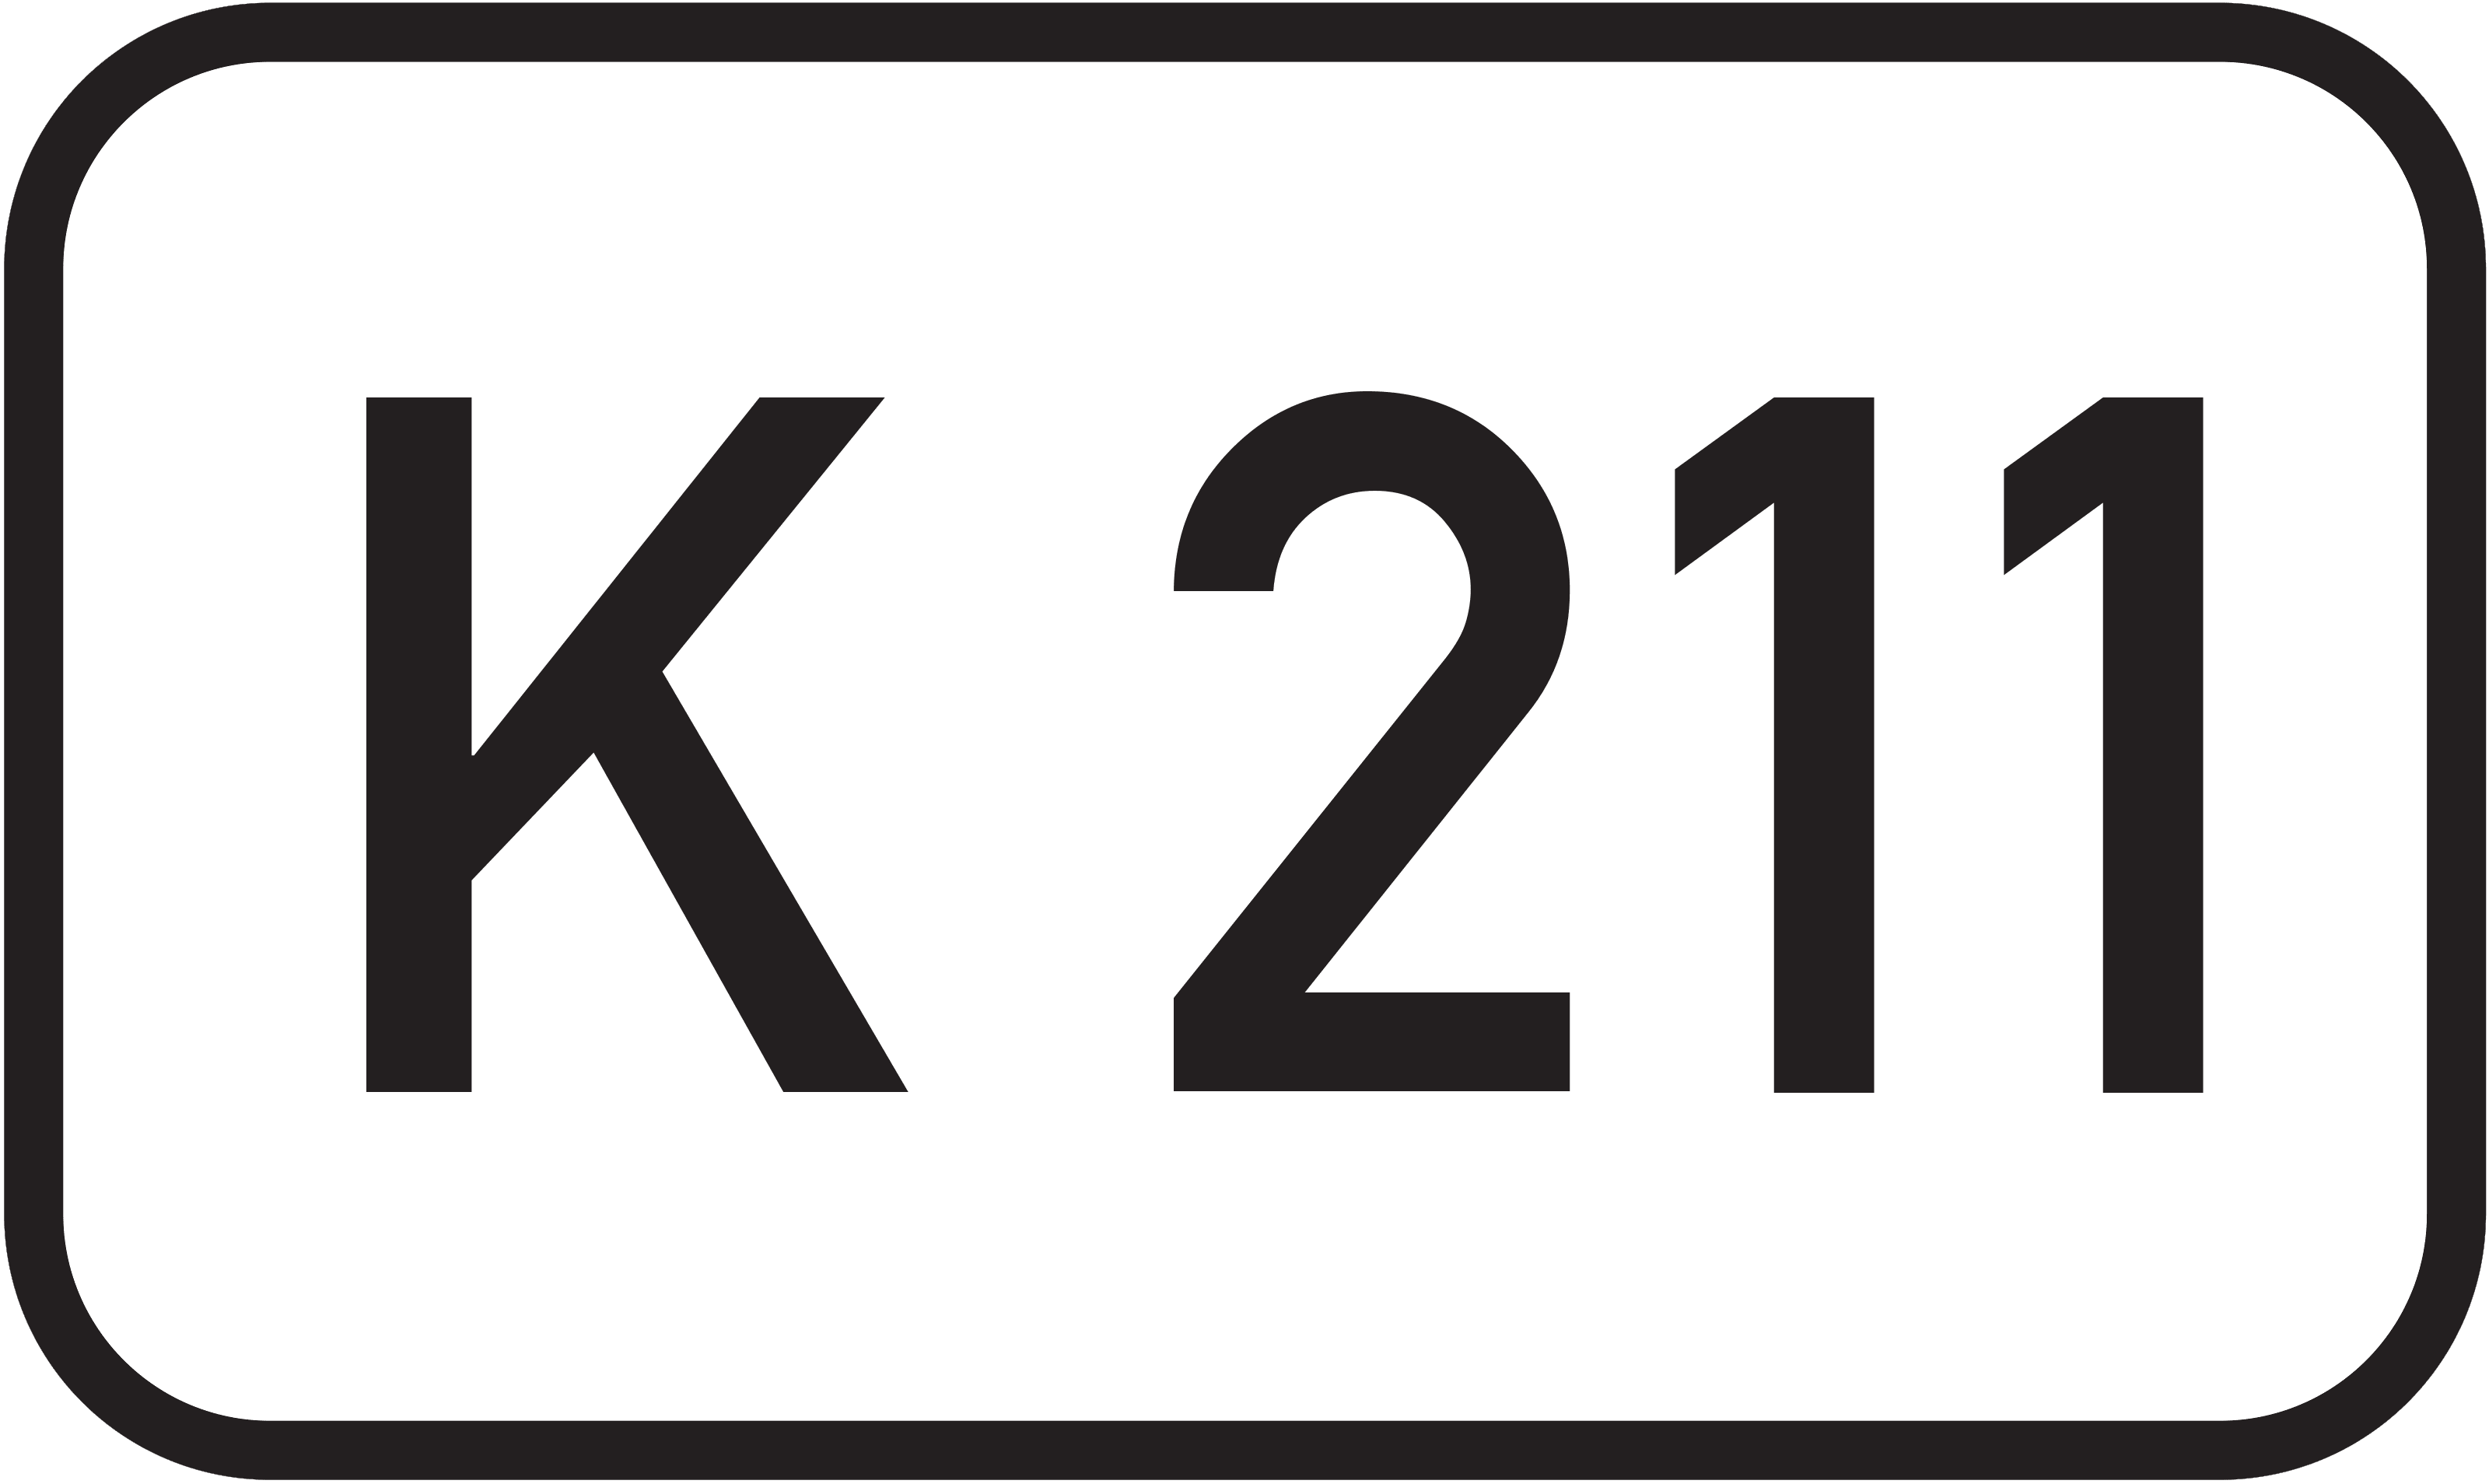 Kreisstraße K 211